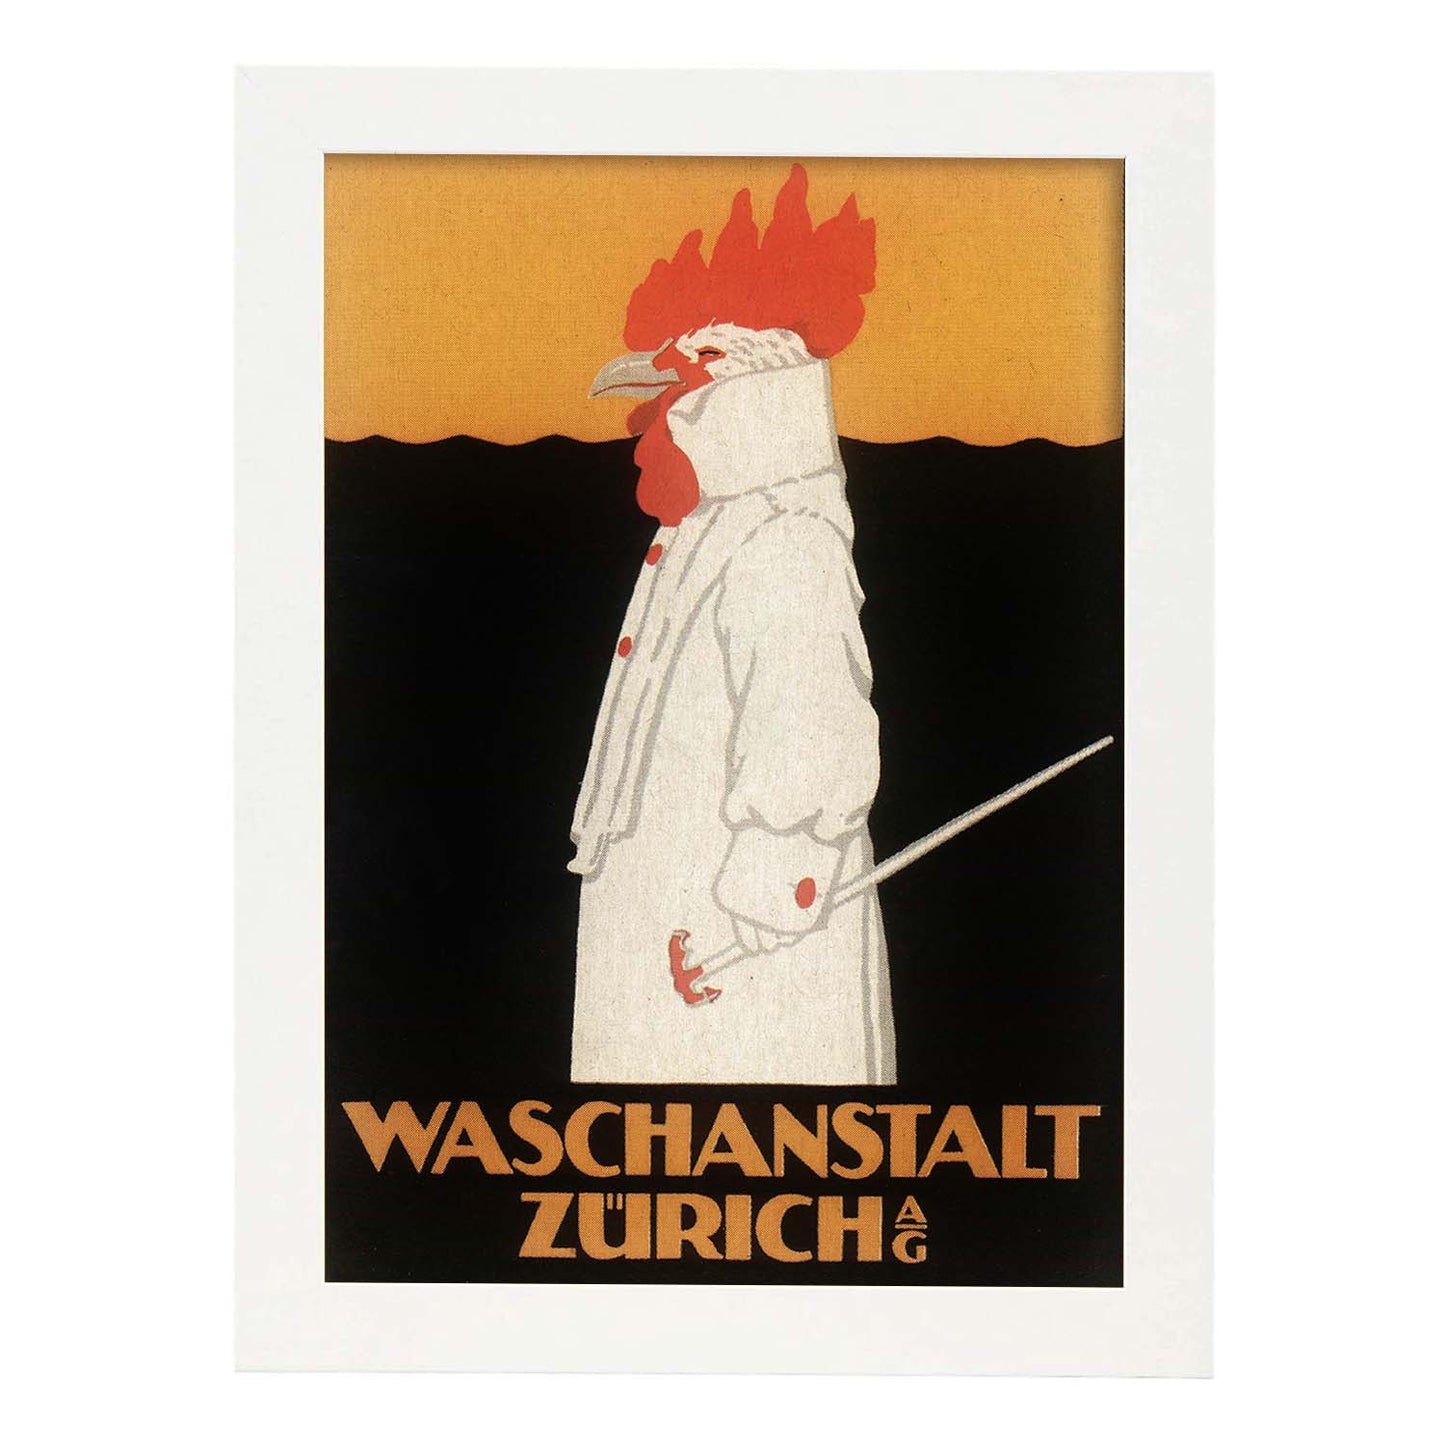 Poster vintage. Anuncio vintage Waschanstalt Zurich de 1905.-Artwork-Nacnic-A4-Marco Blanco-Nacnic Estudio SL